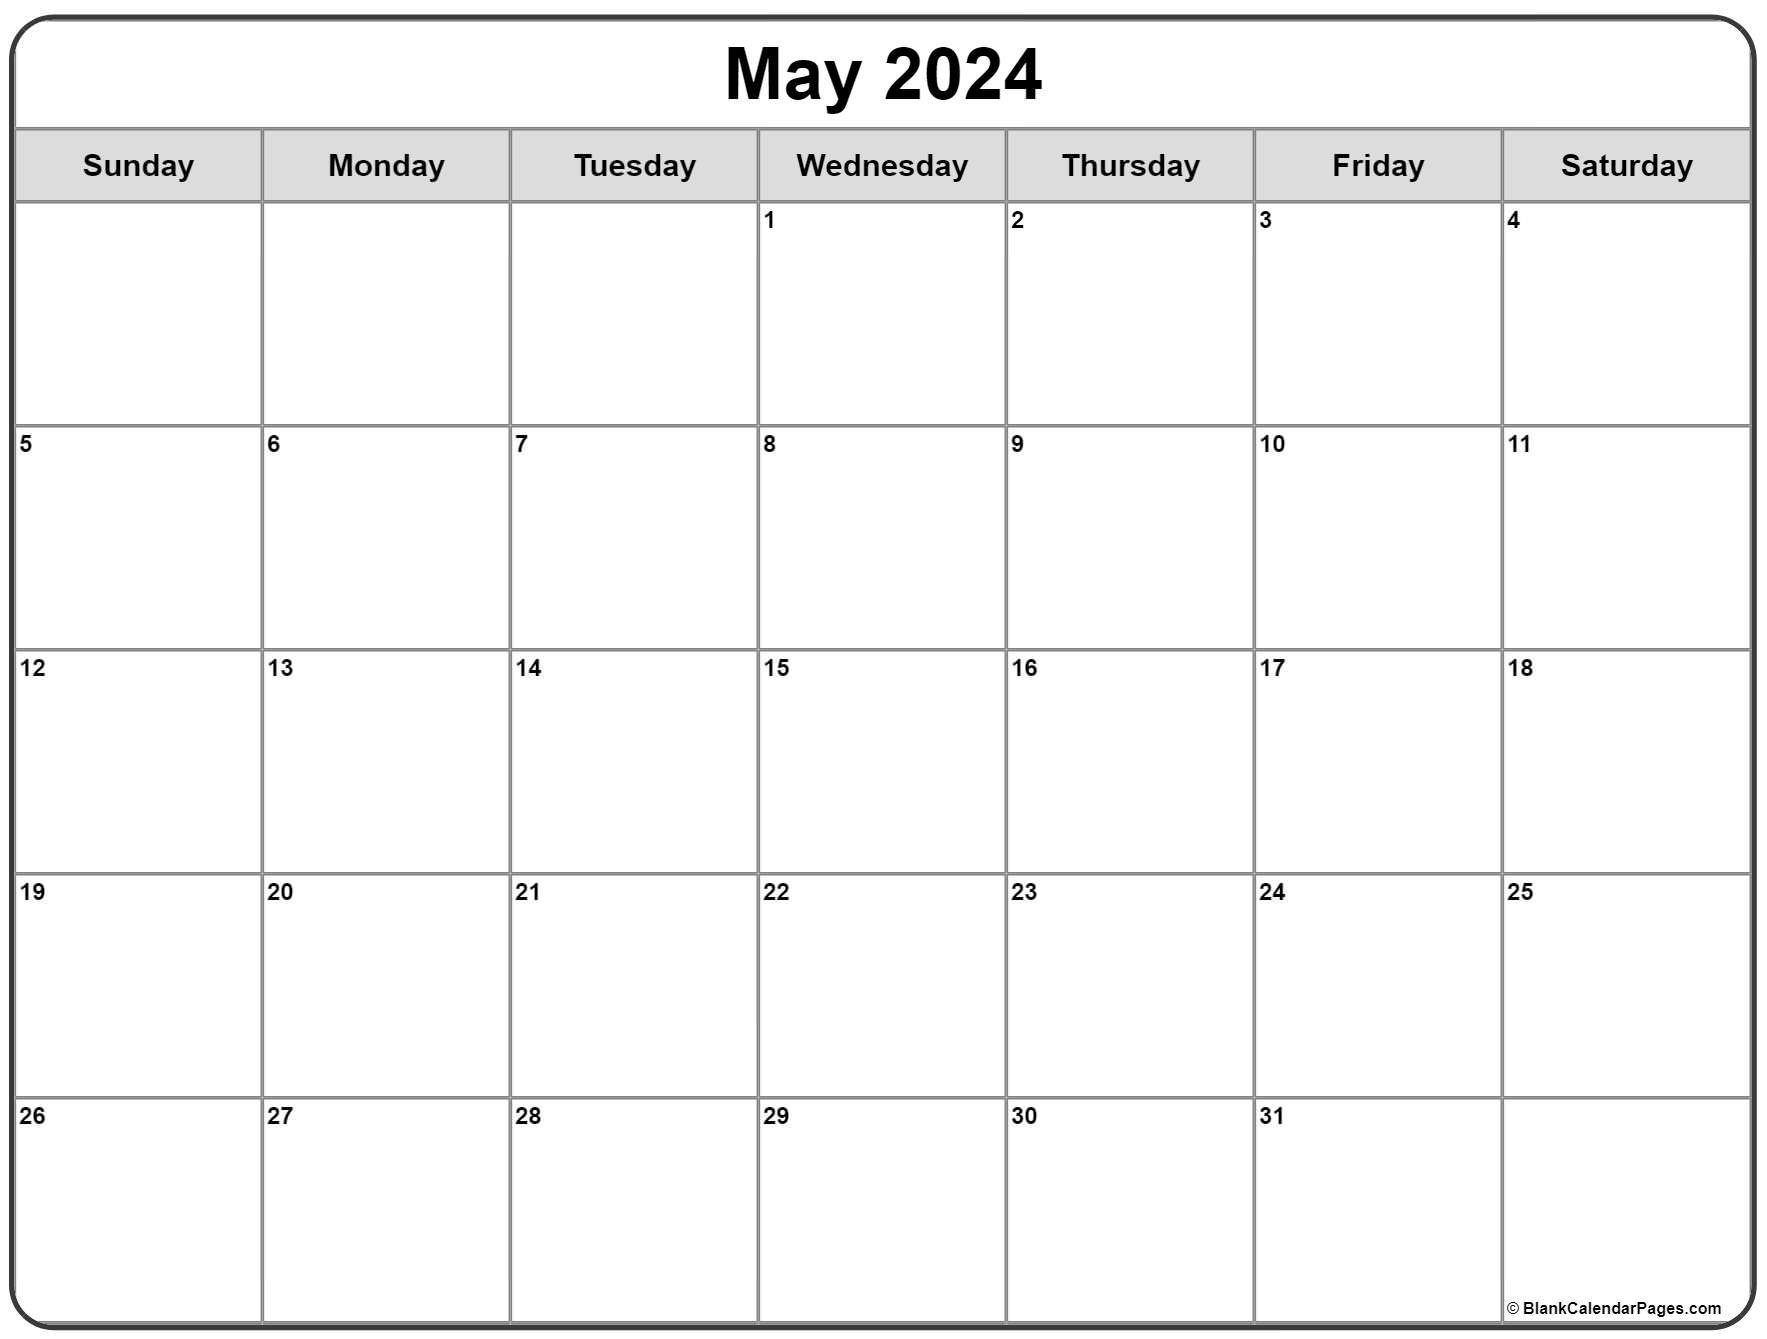 How Many Days Till May 1 2024 Freddi Robina